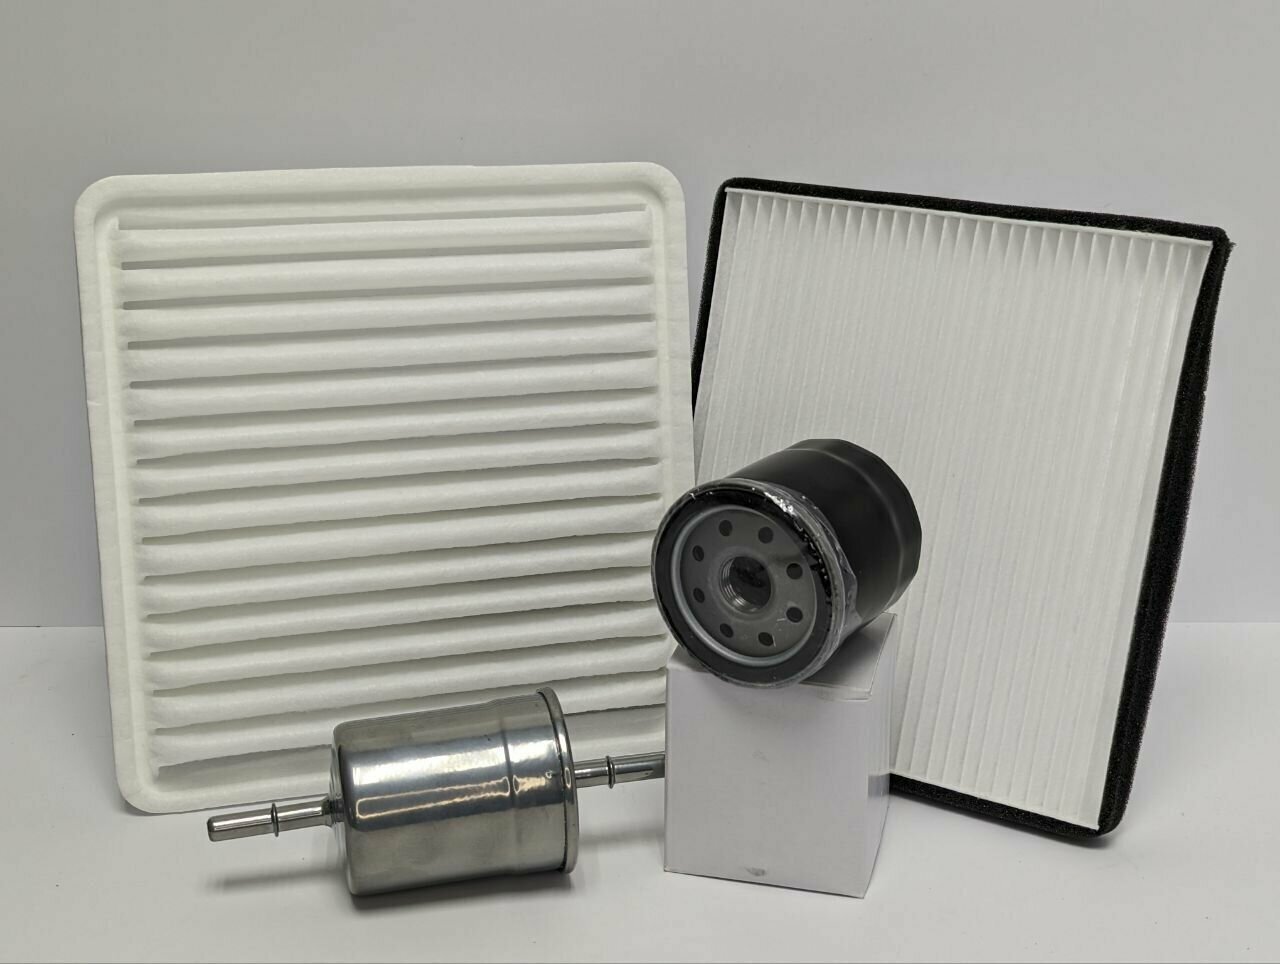 Фильтр масляный+воздушный+салонный+топливный - комплект для ТО Lifan X60 (Лифан Х60)